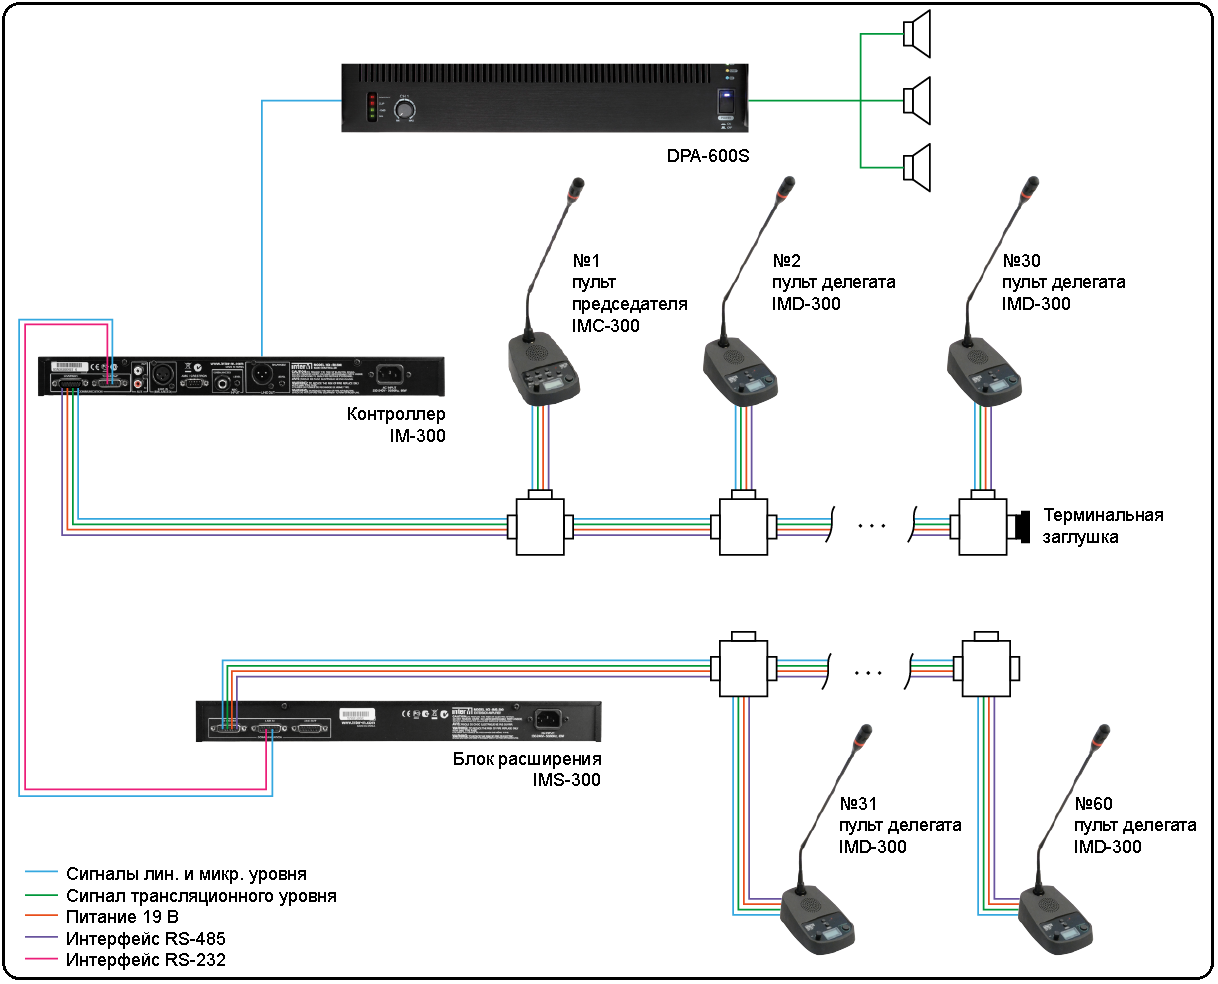 Схема подключения конференц-системы на базе контроллера IM-300